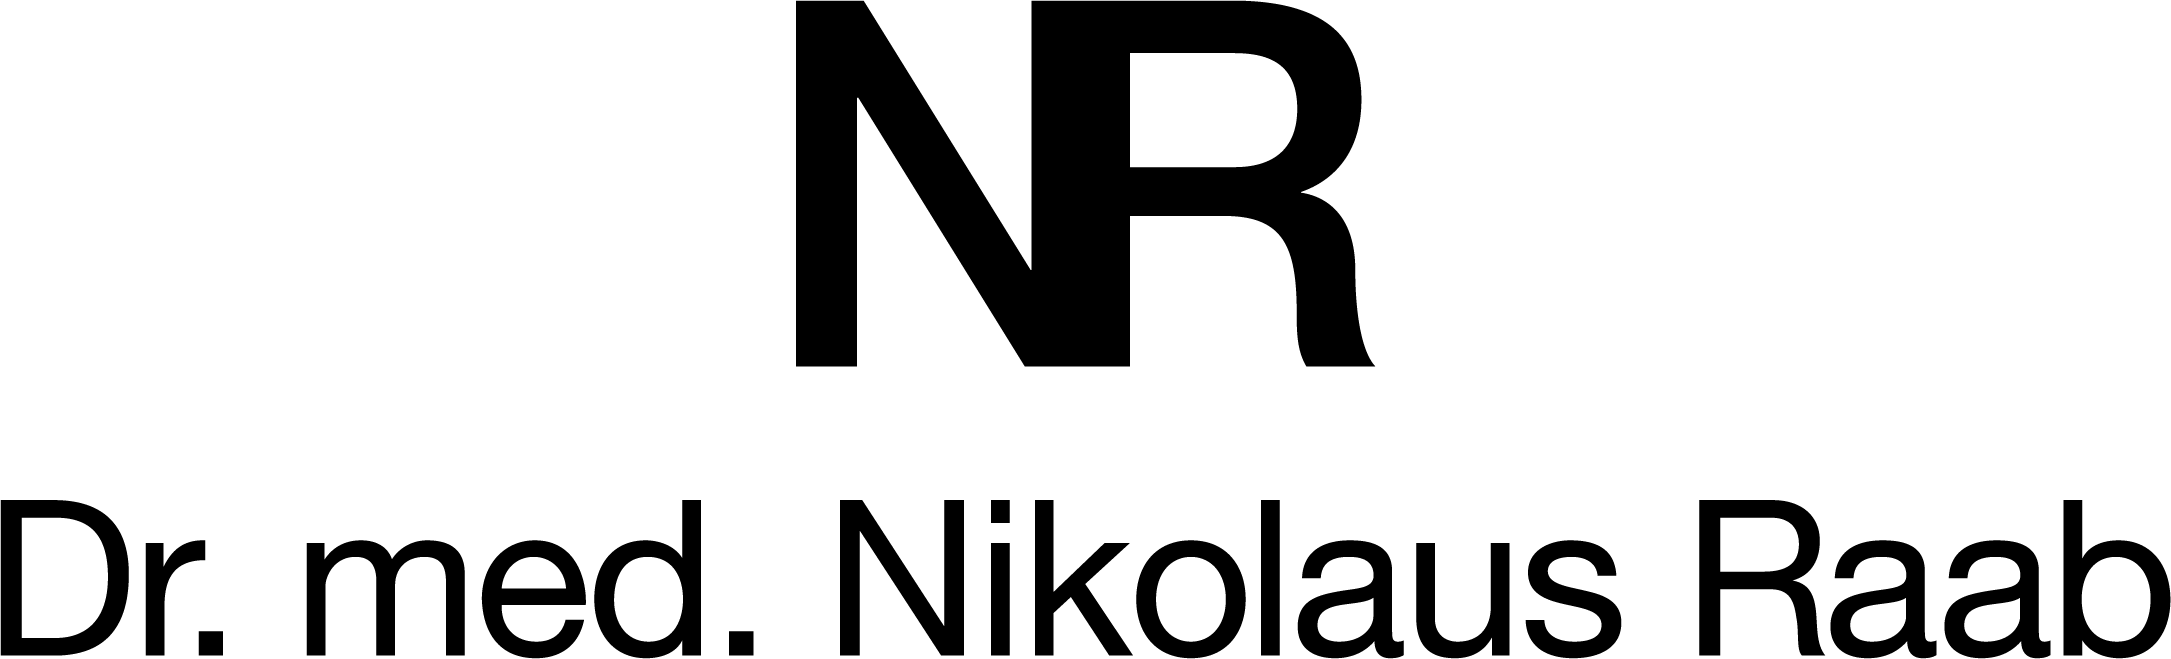 SAATMUNICH_Nikolaus Raab_Logo